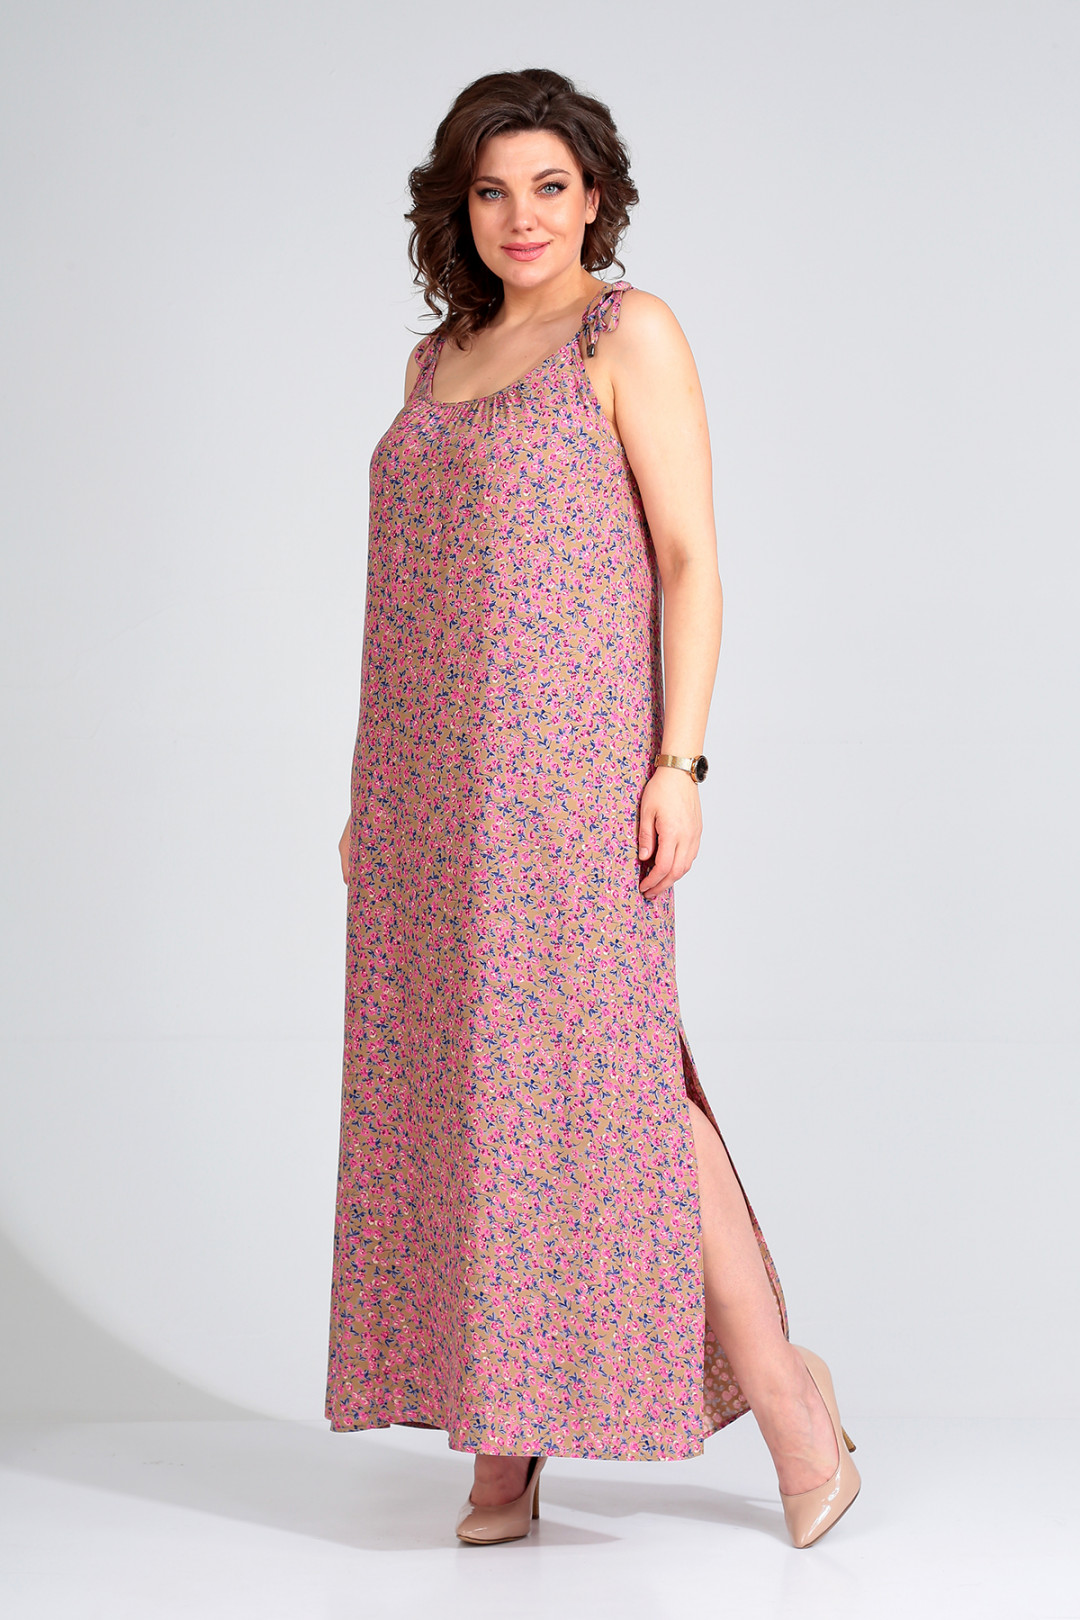 Платье Лиона-Стиль 749 розово-бежевый